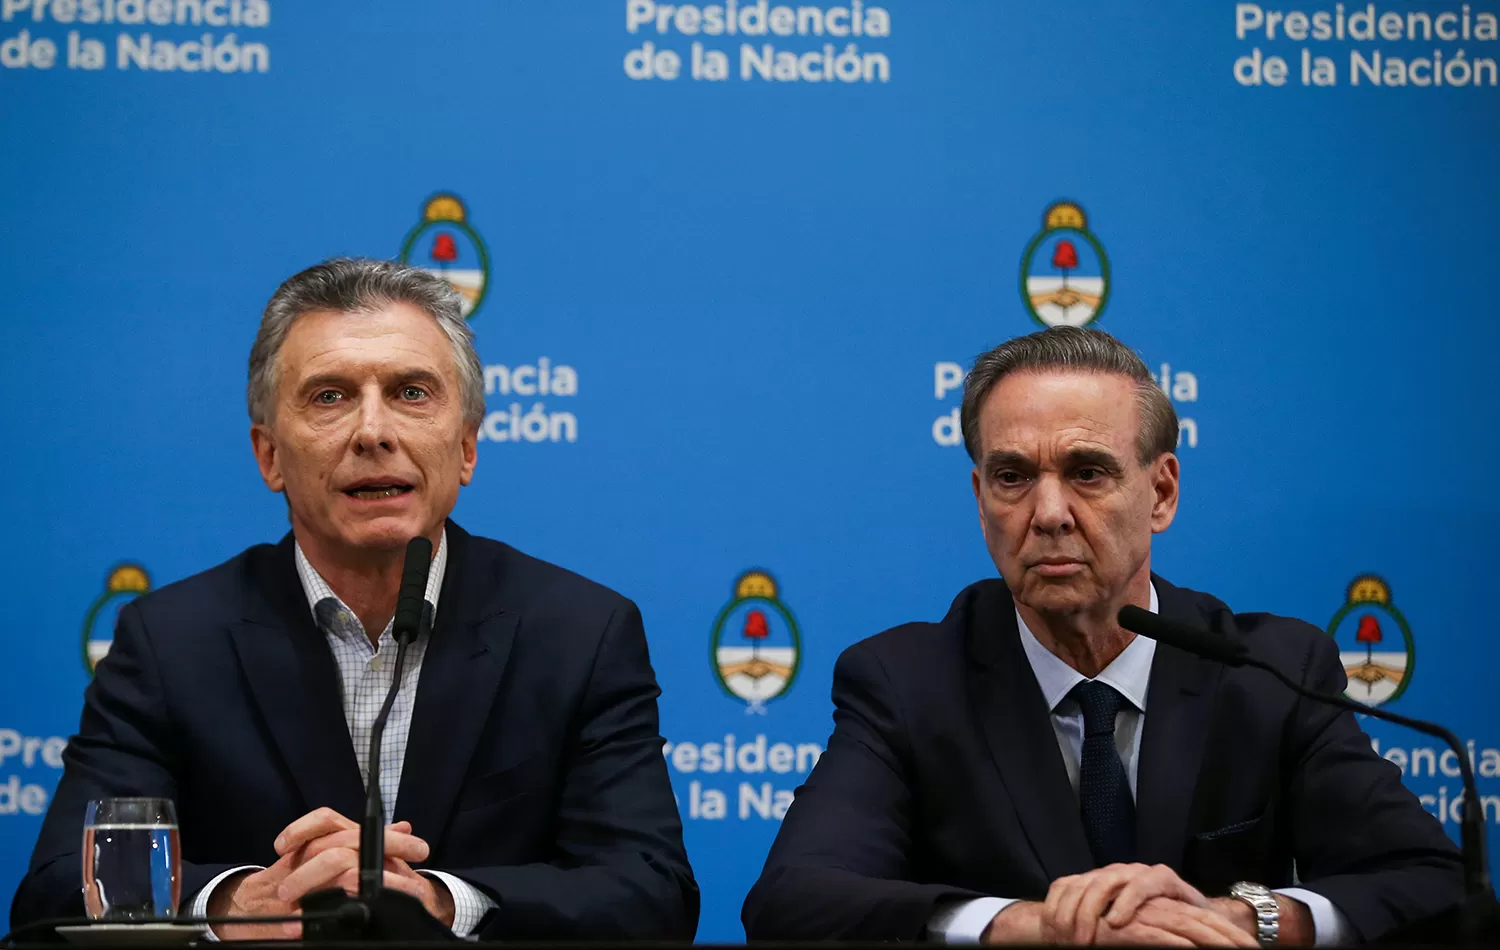 Tensión mezclada con optimismo por octubre fueron las sensaciones que dejó la conferencia de prensa que dieron Macri y Pichetto.